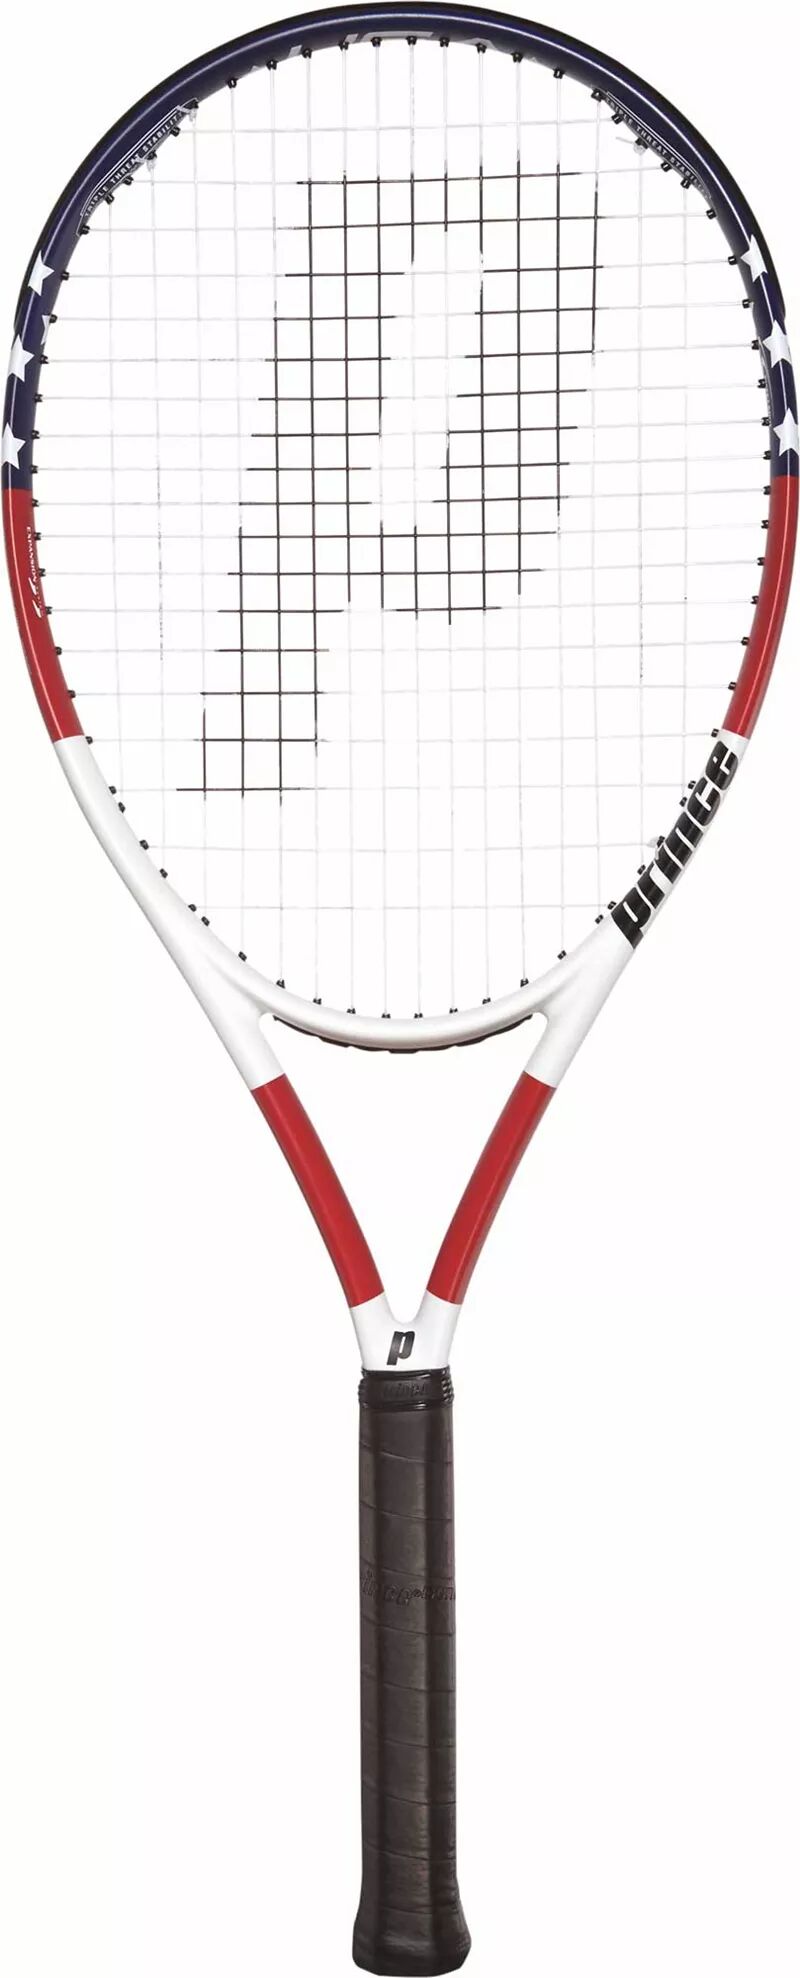 Теннисная ракетка Prince USA пляжная теннисная ракетка gaivota color series 18k из углеродного волокна матовая пляжная теннисная ракетка с рюкзаком